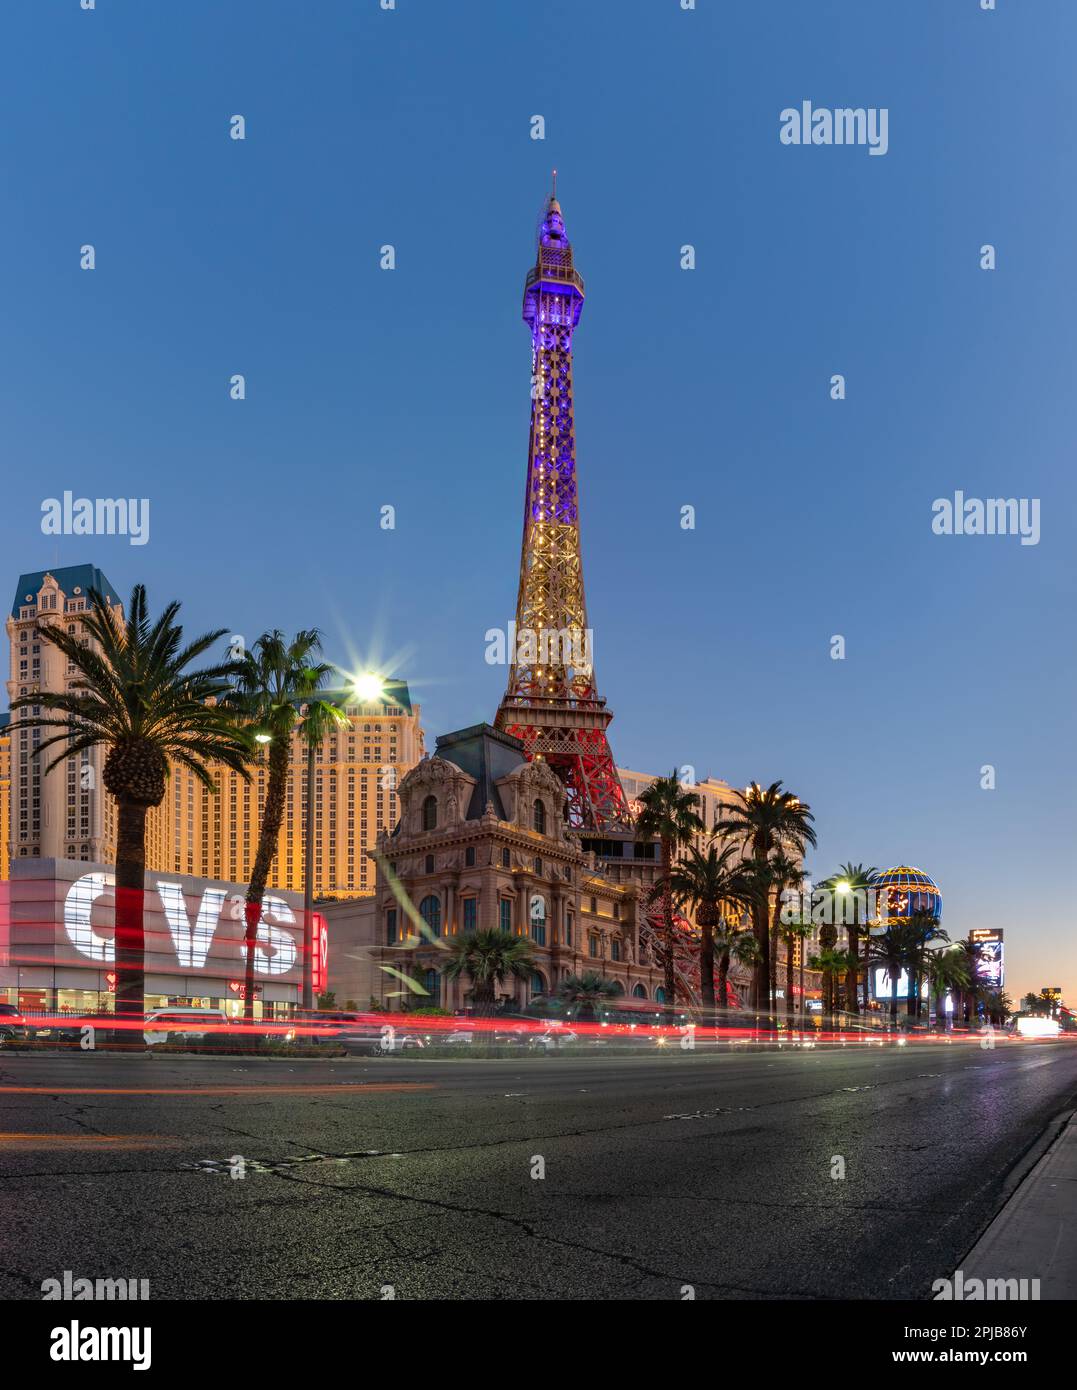 Una imagen de París Las Vegas al atardecer, con la Torre Eiffel decorada con los colores de la bandera francesa. Foto de stock